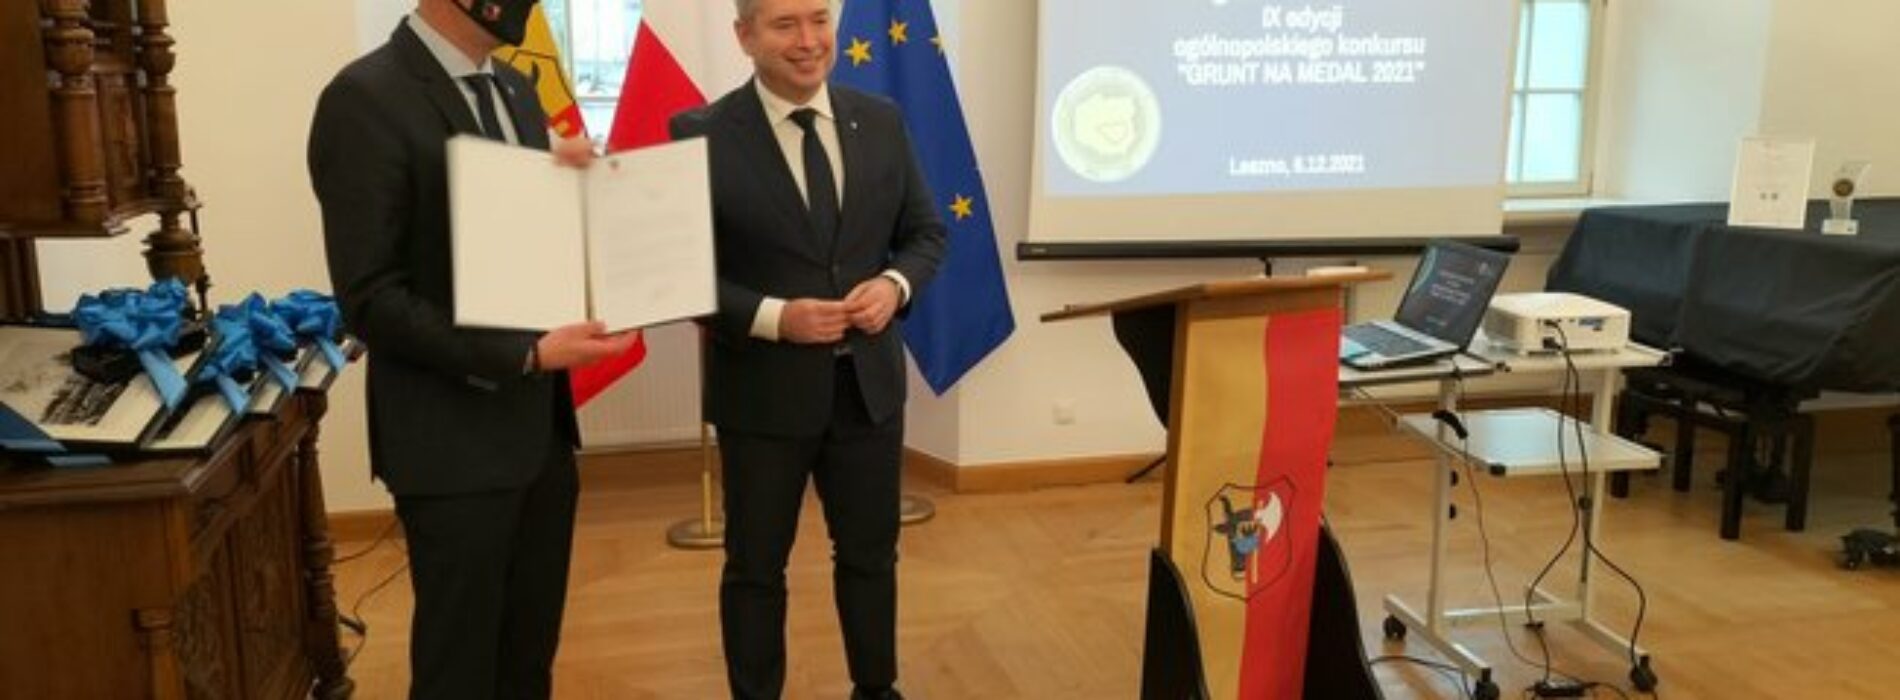 Leszno zwycięzcą Grunt na medal 2021 w województwie wielkopolskim